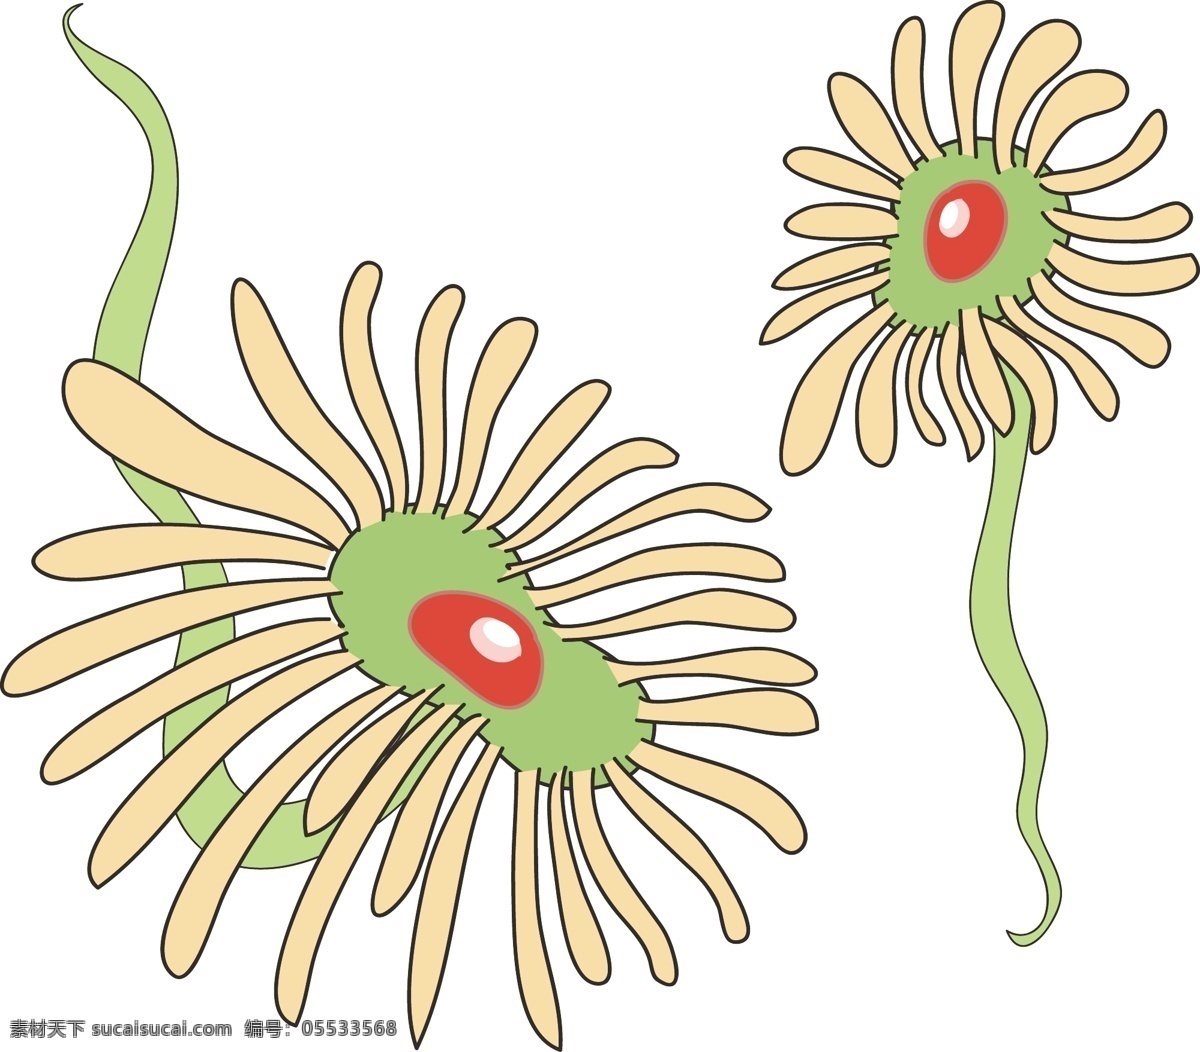 单细胞 生物 细菌 单细胞生物 细菌插画 卡通插画 细胞膜插画 细胞壁 核糖体 病菌 螺旋菌插画